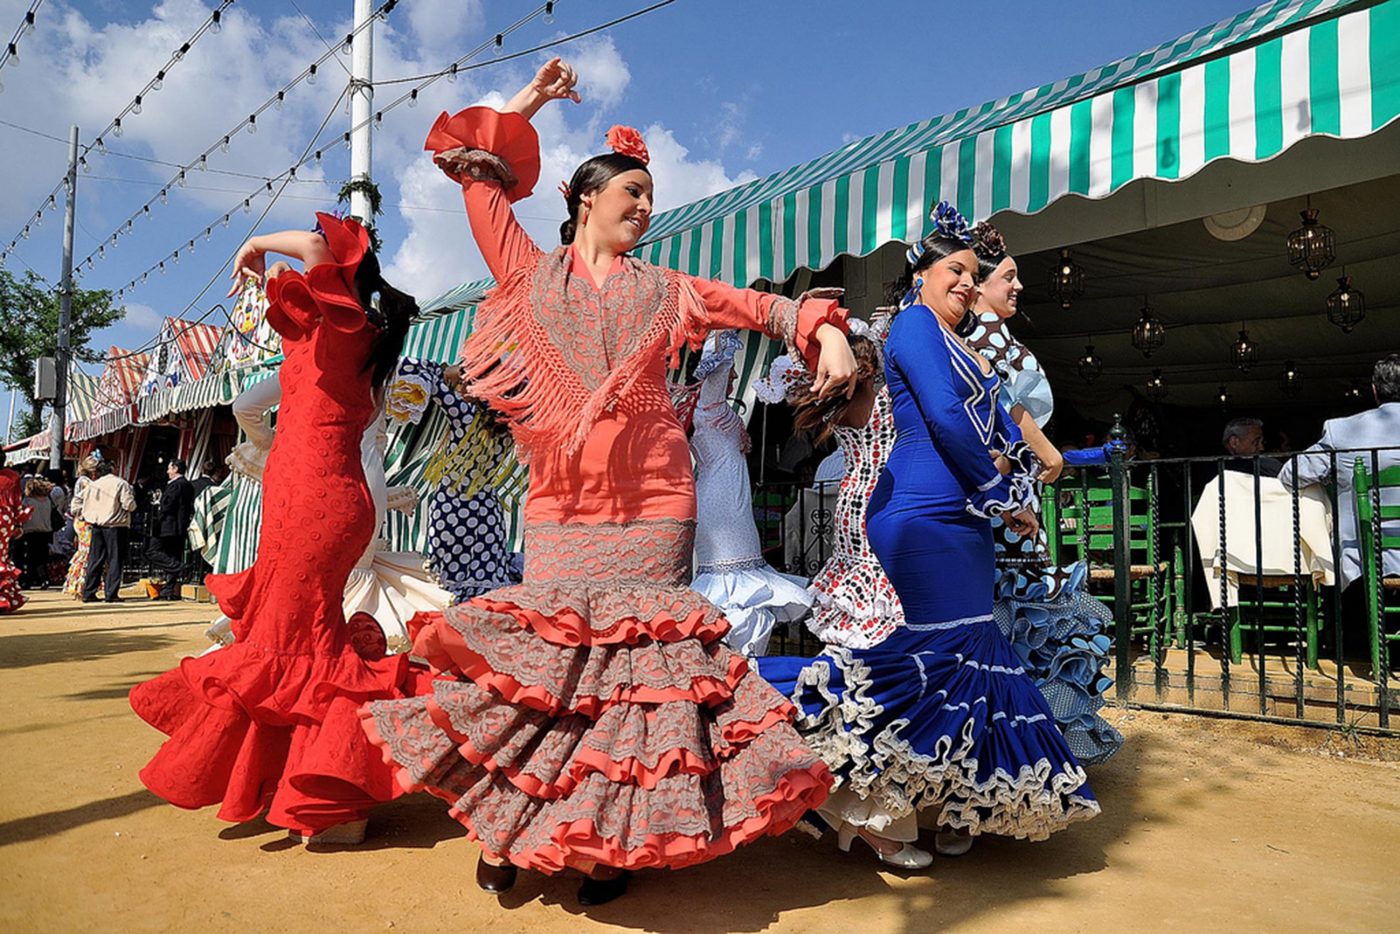 Las mejores fiestas en España Feria de abril 2